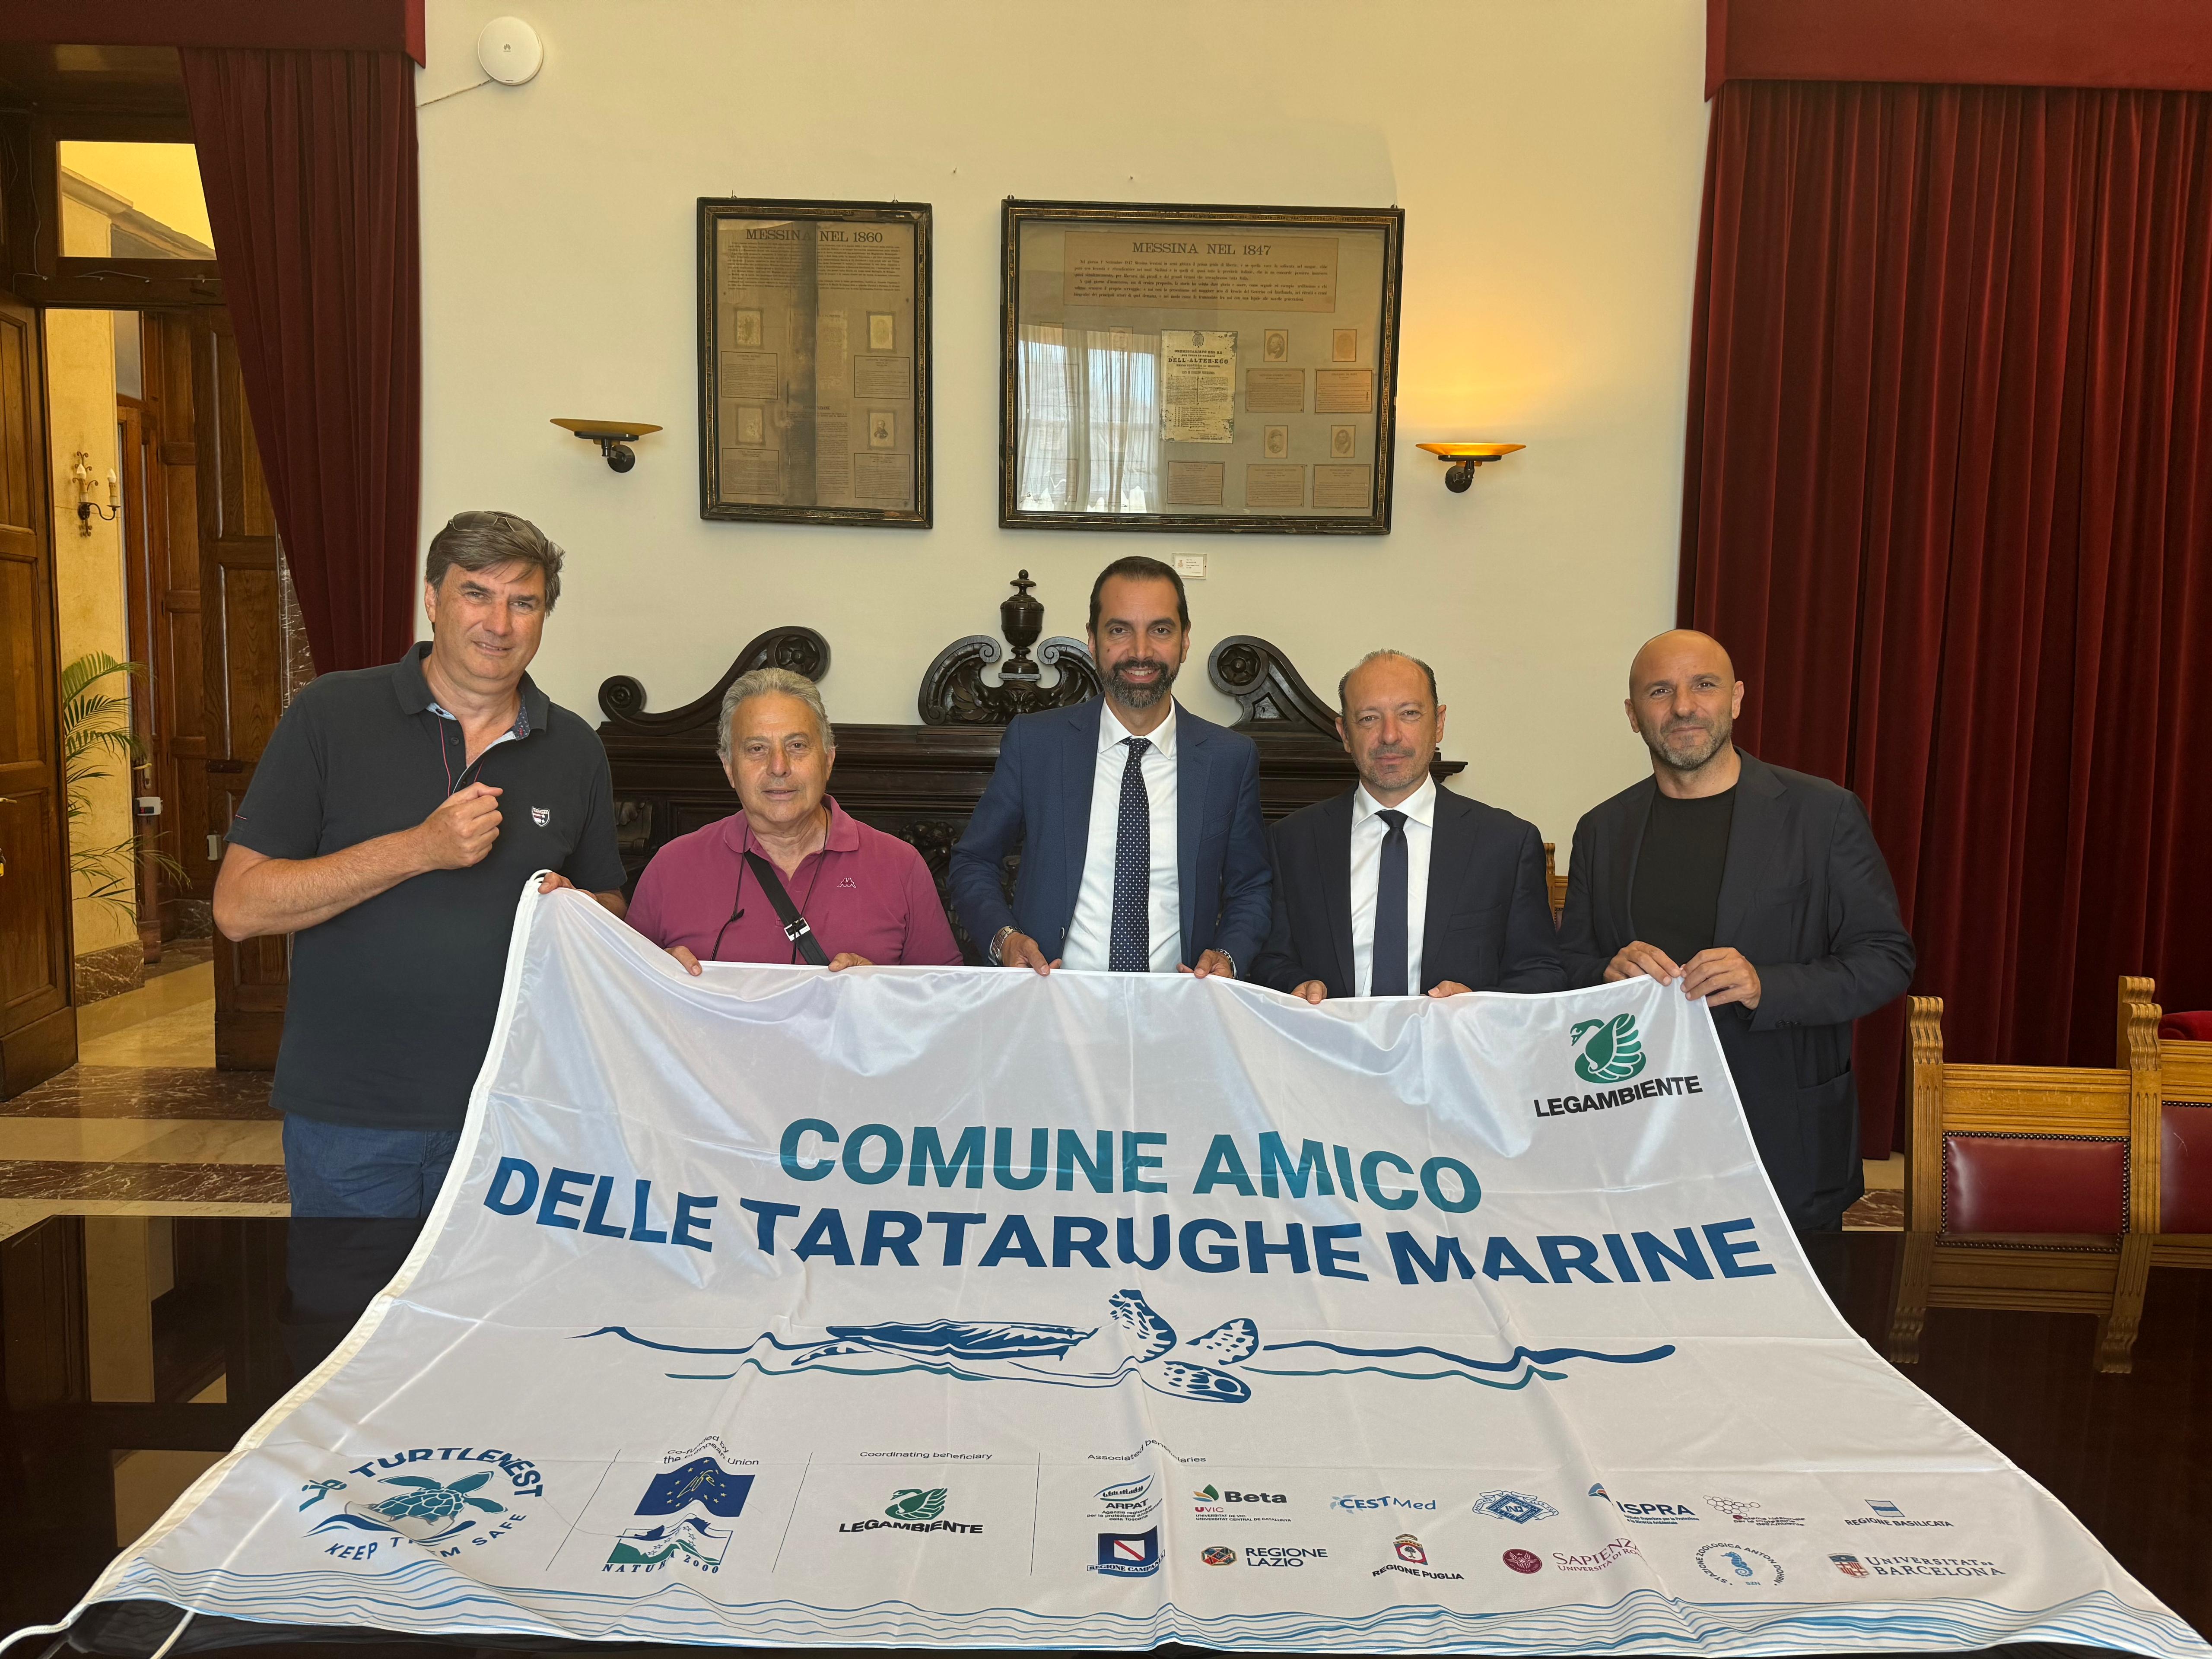 Consegnata al sindaco Basile la bandiera “Comune amico delle tartarughe marine”